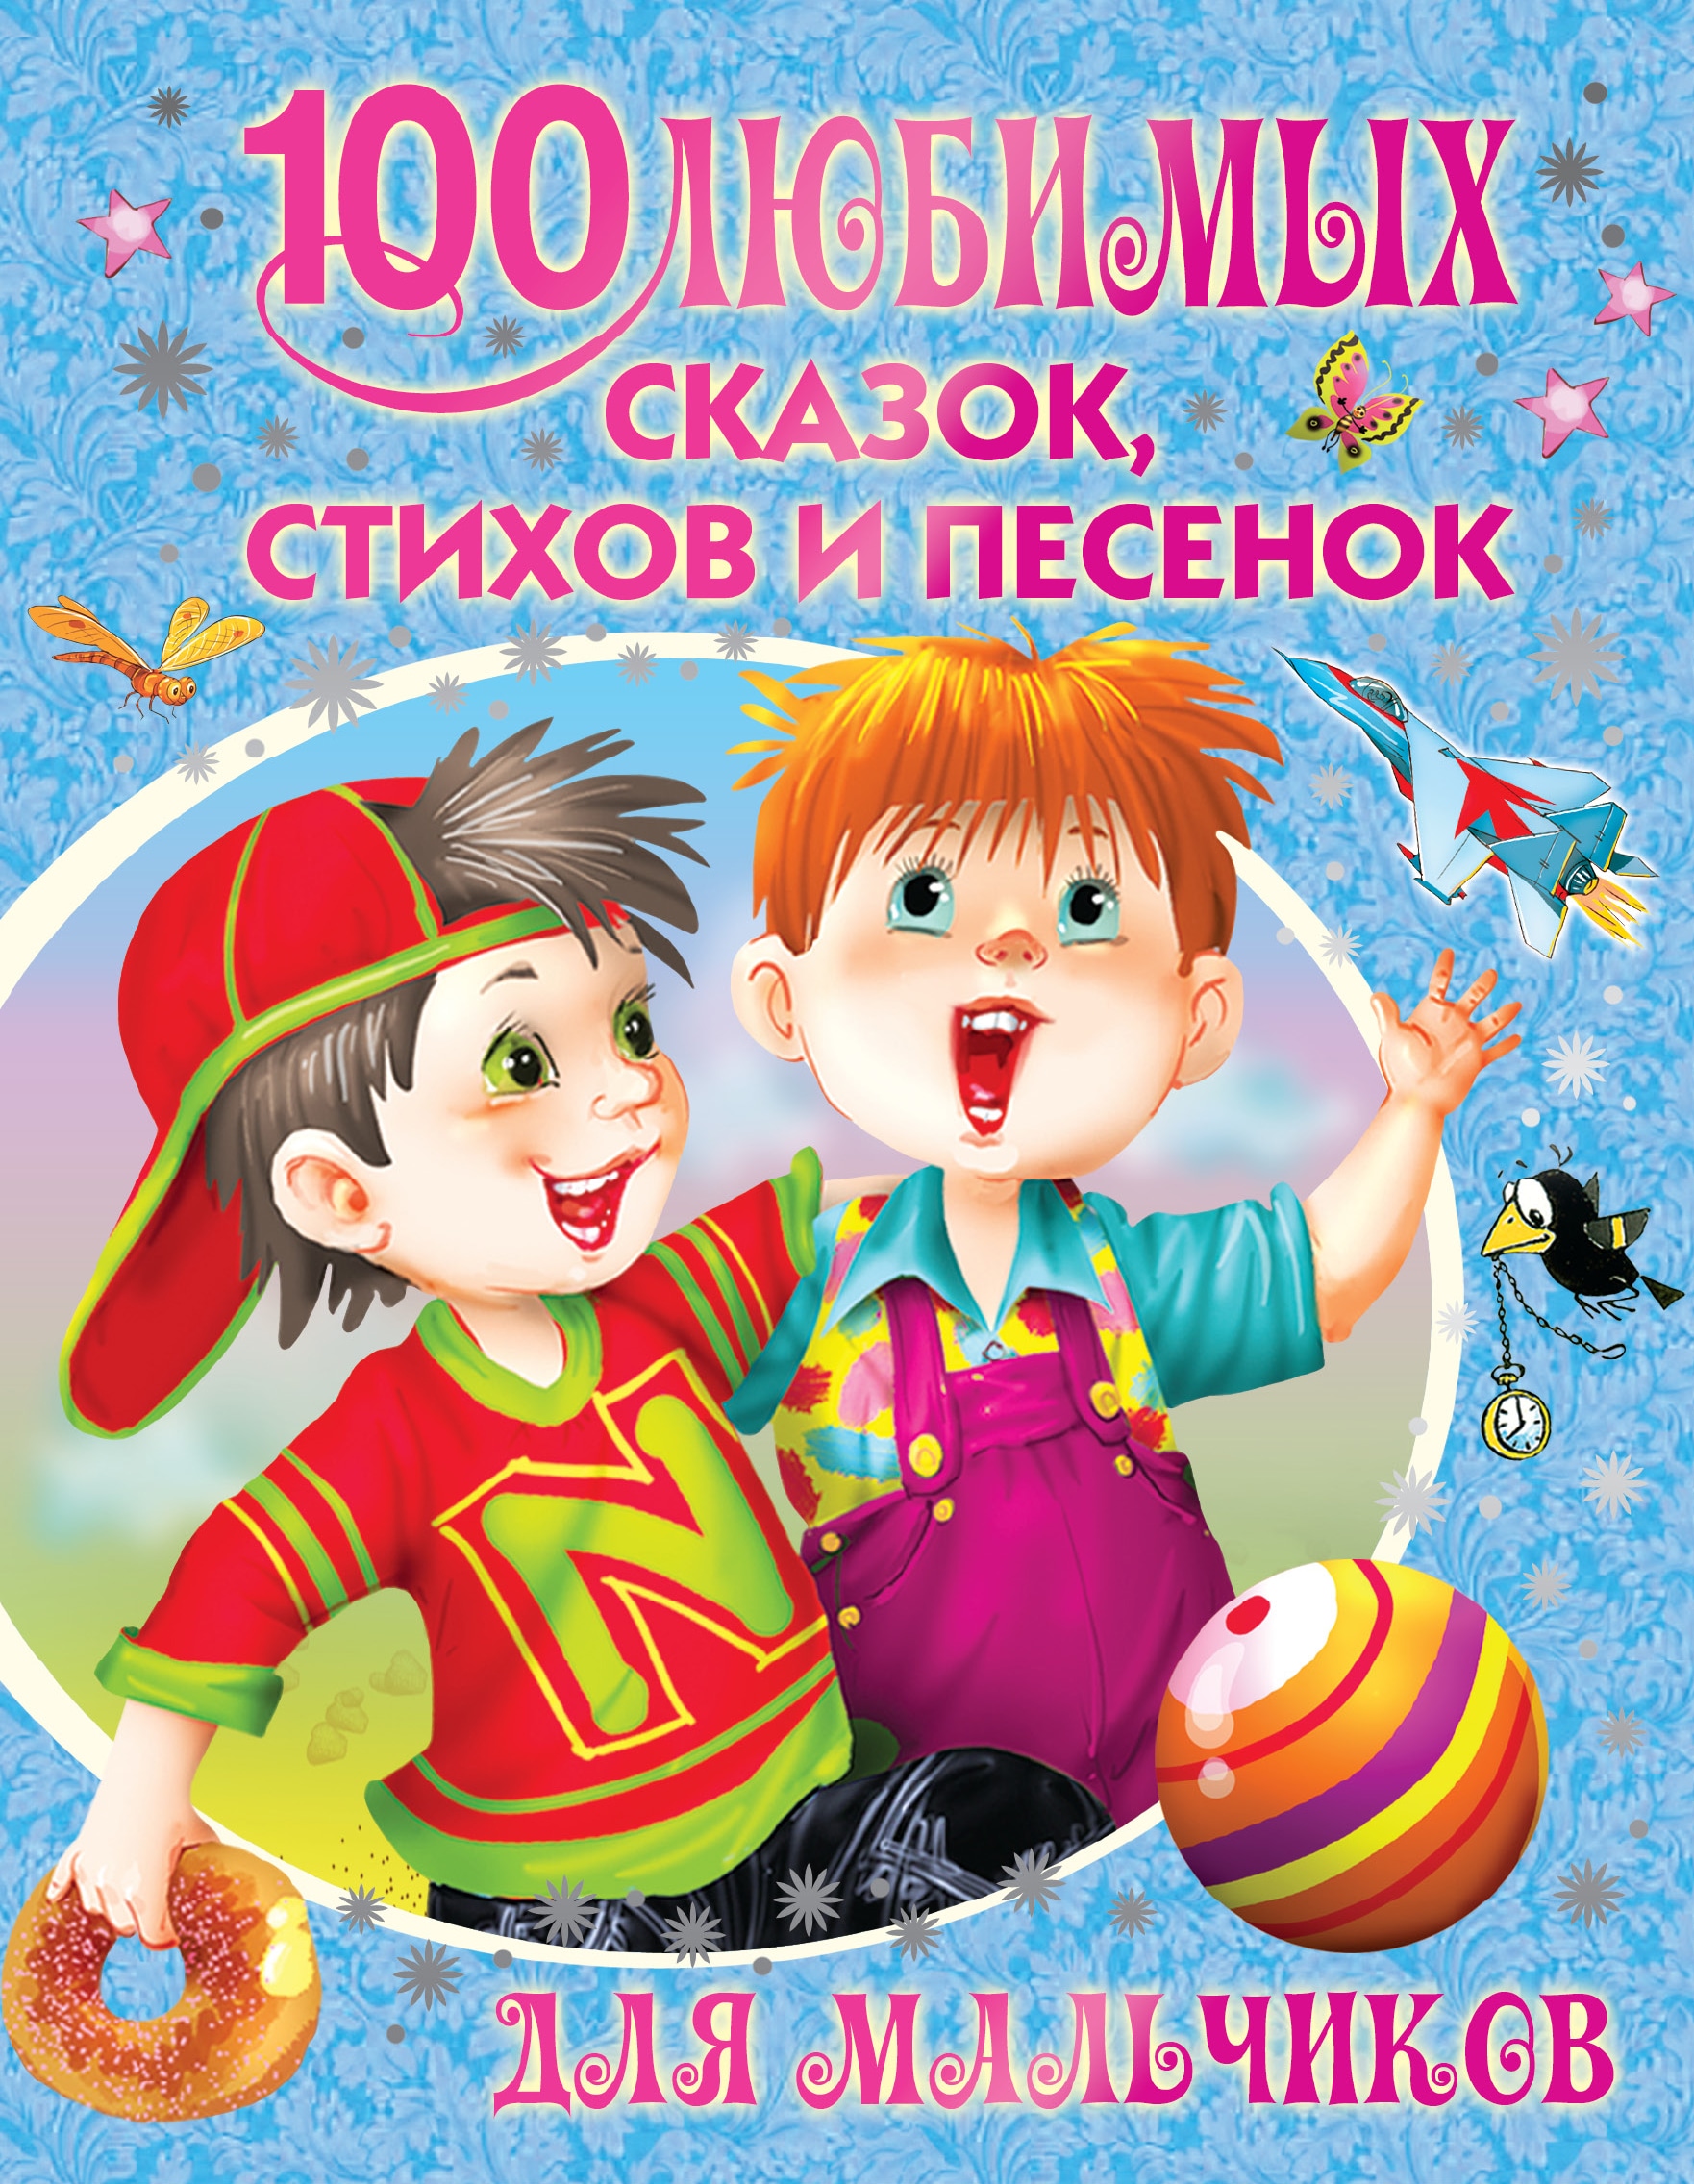 Книга «100 любимых сказок, стихов и песенок для мальчиков» Корней Чуковский — 25 октября 2018 г.